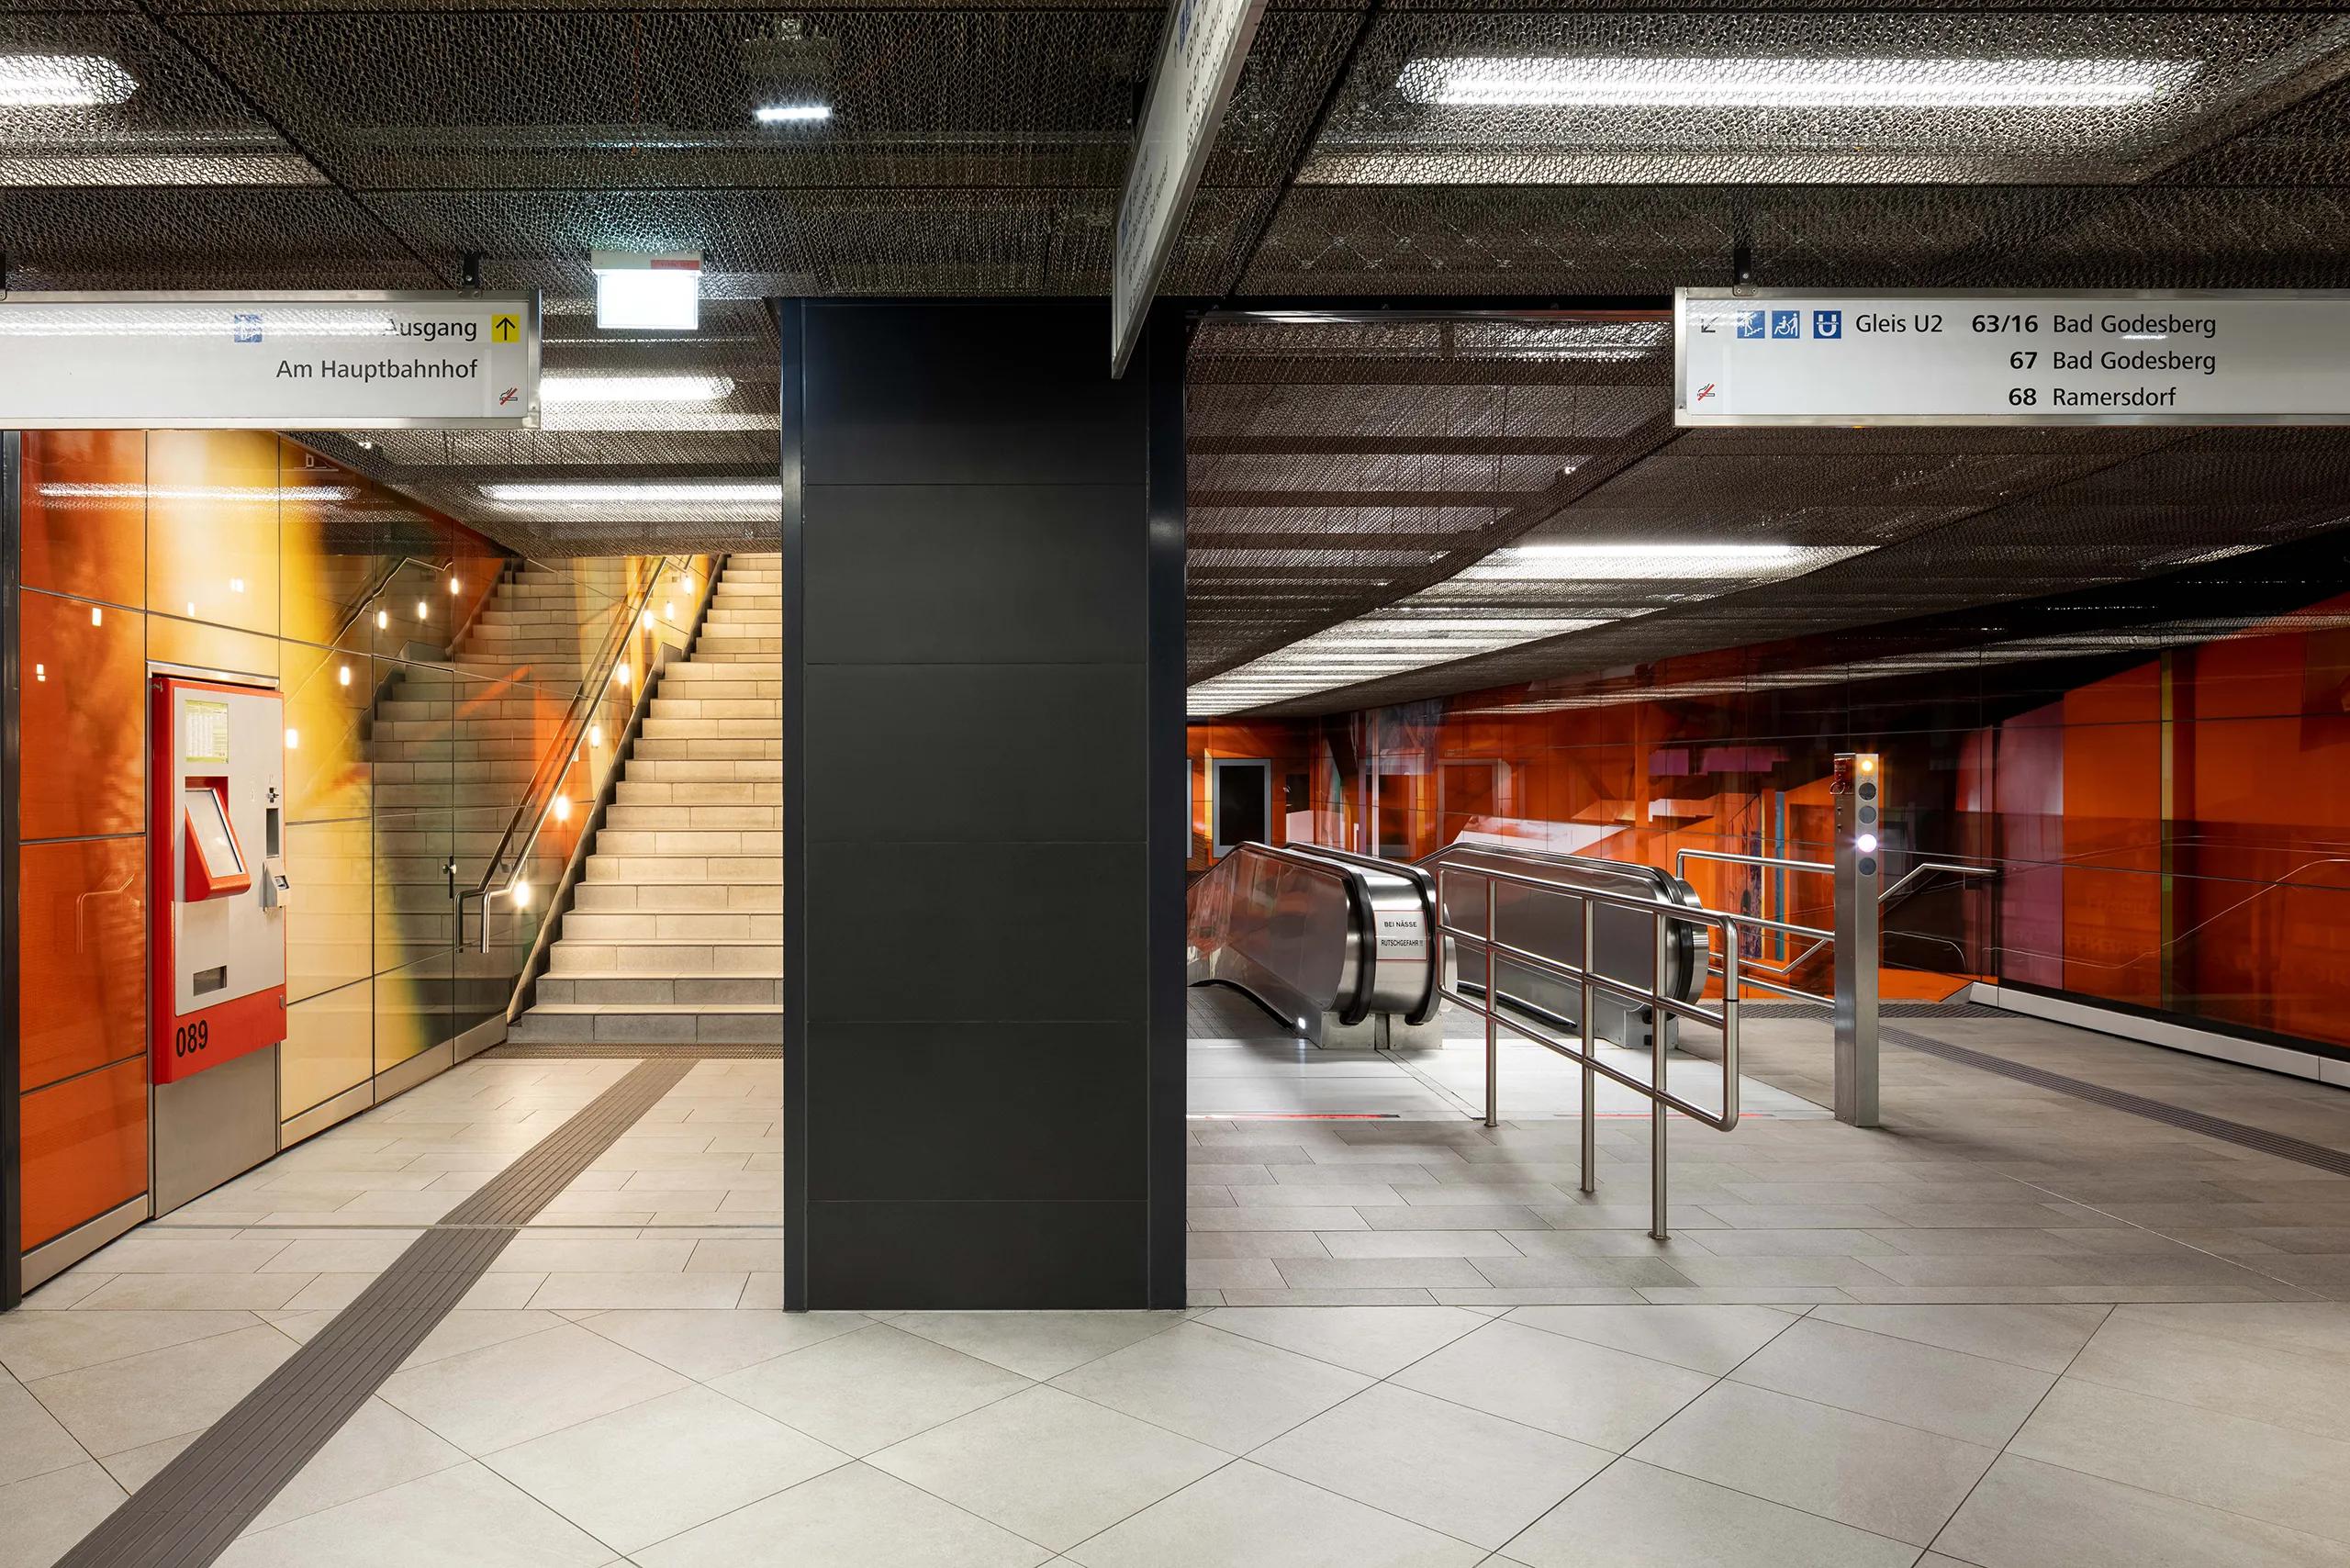 Blick vom U-Bahn-Gleis auf die Rolltreppen und den Treppenaufgang